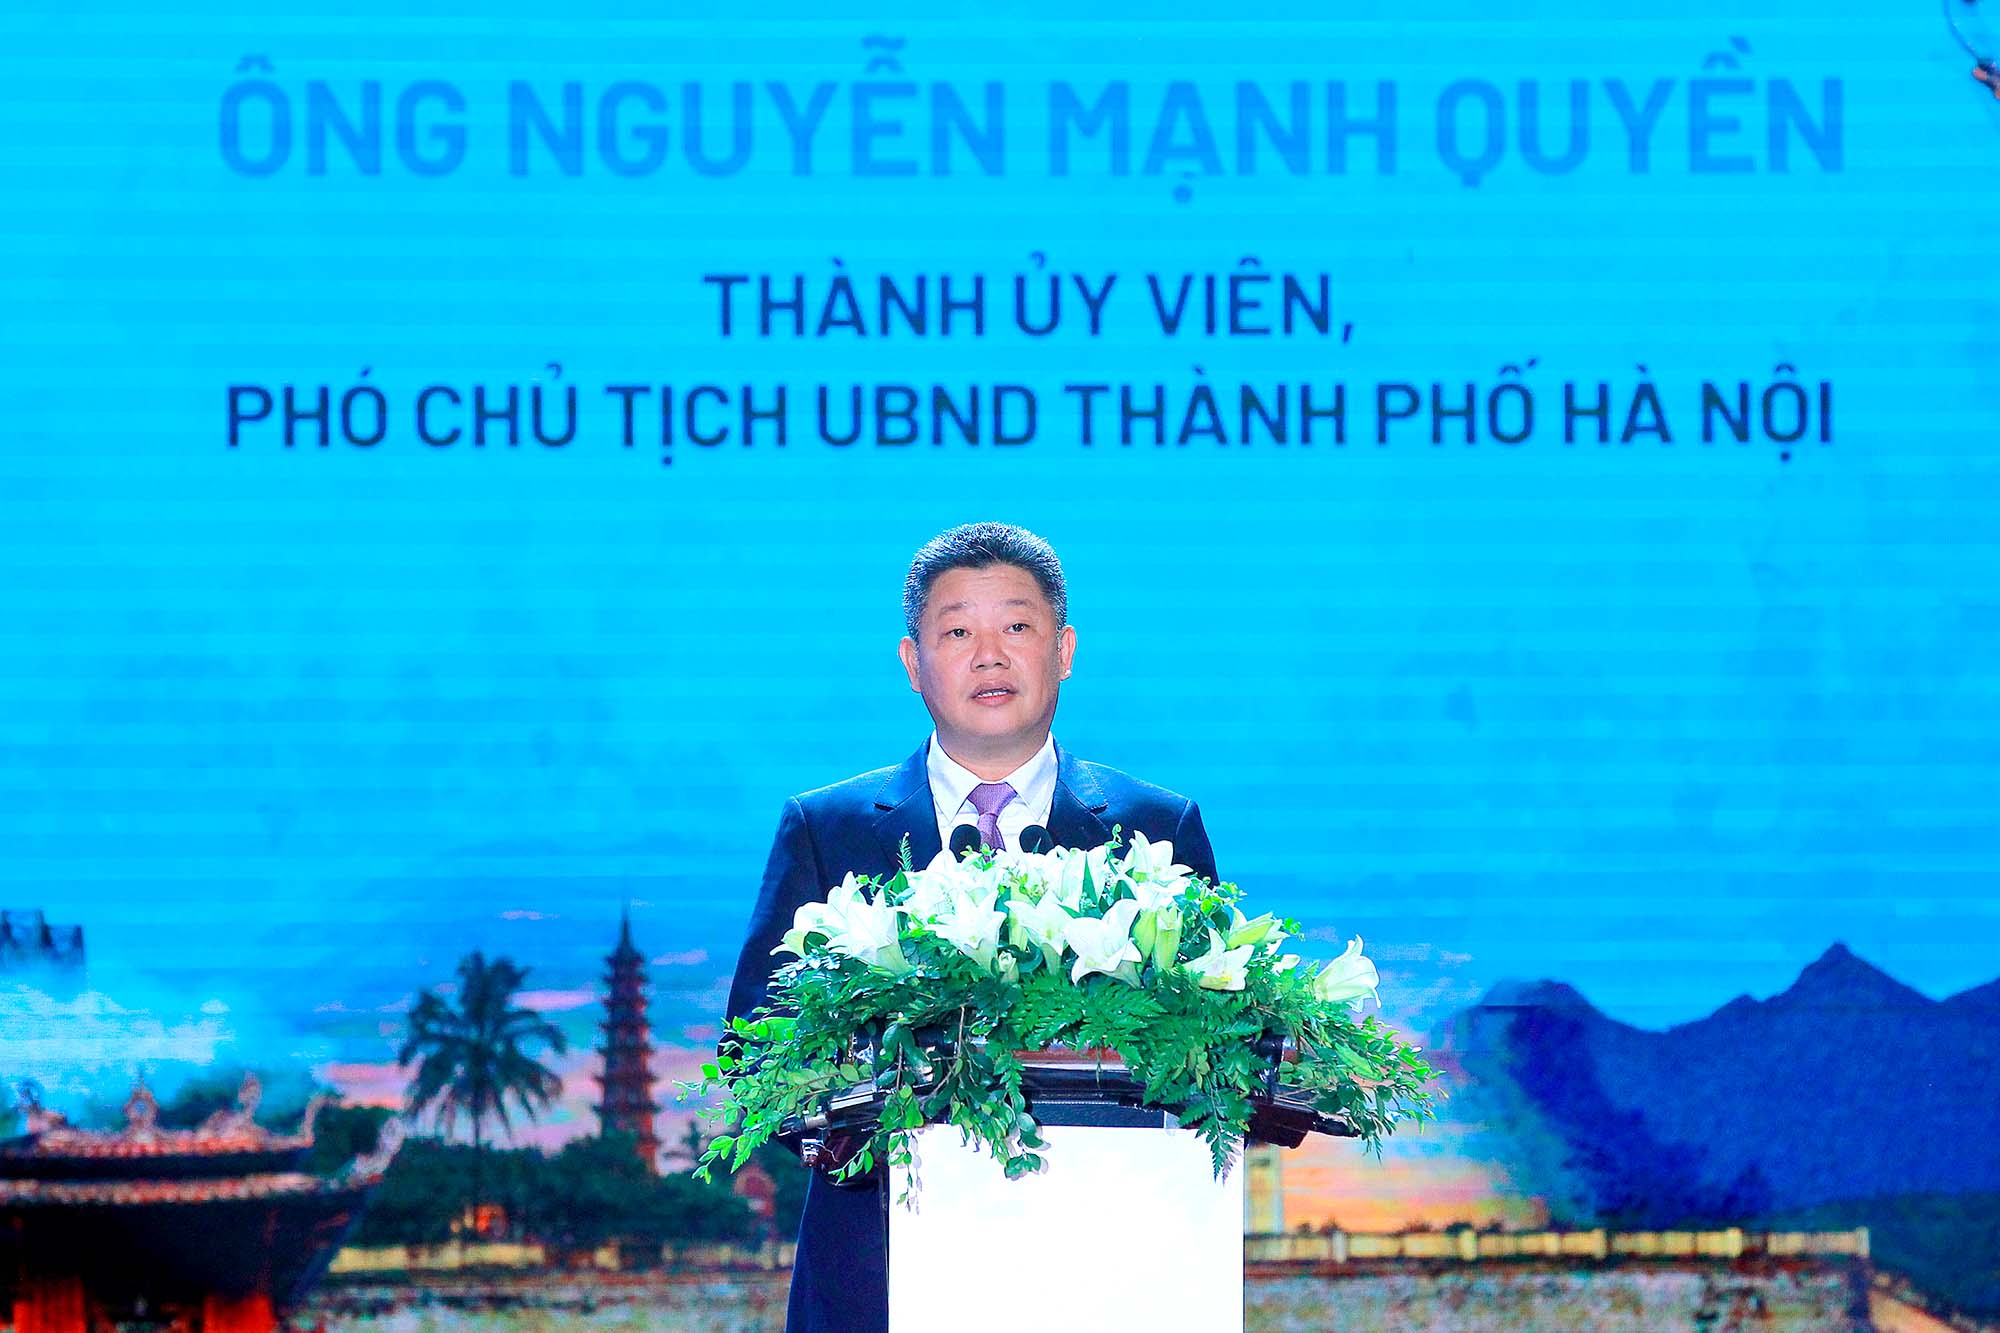 Phó chủ tịch UBND Thành phố Hà Nội Nguyễn Mạnh Quyền